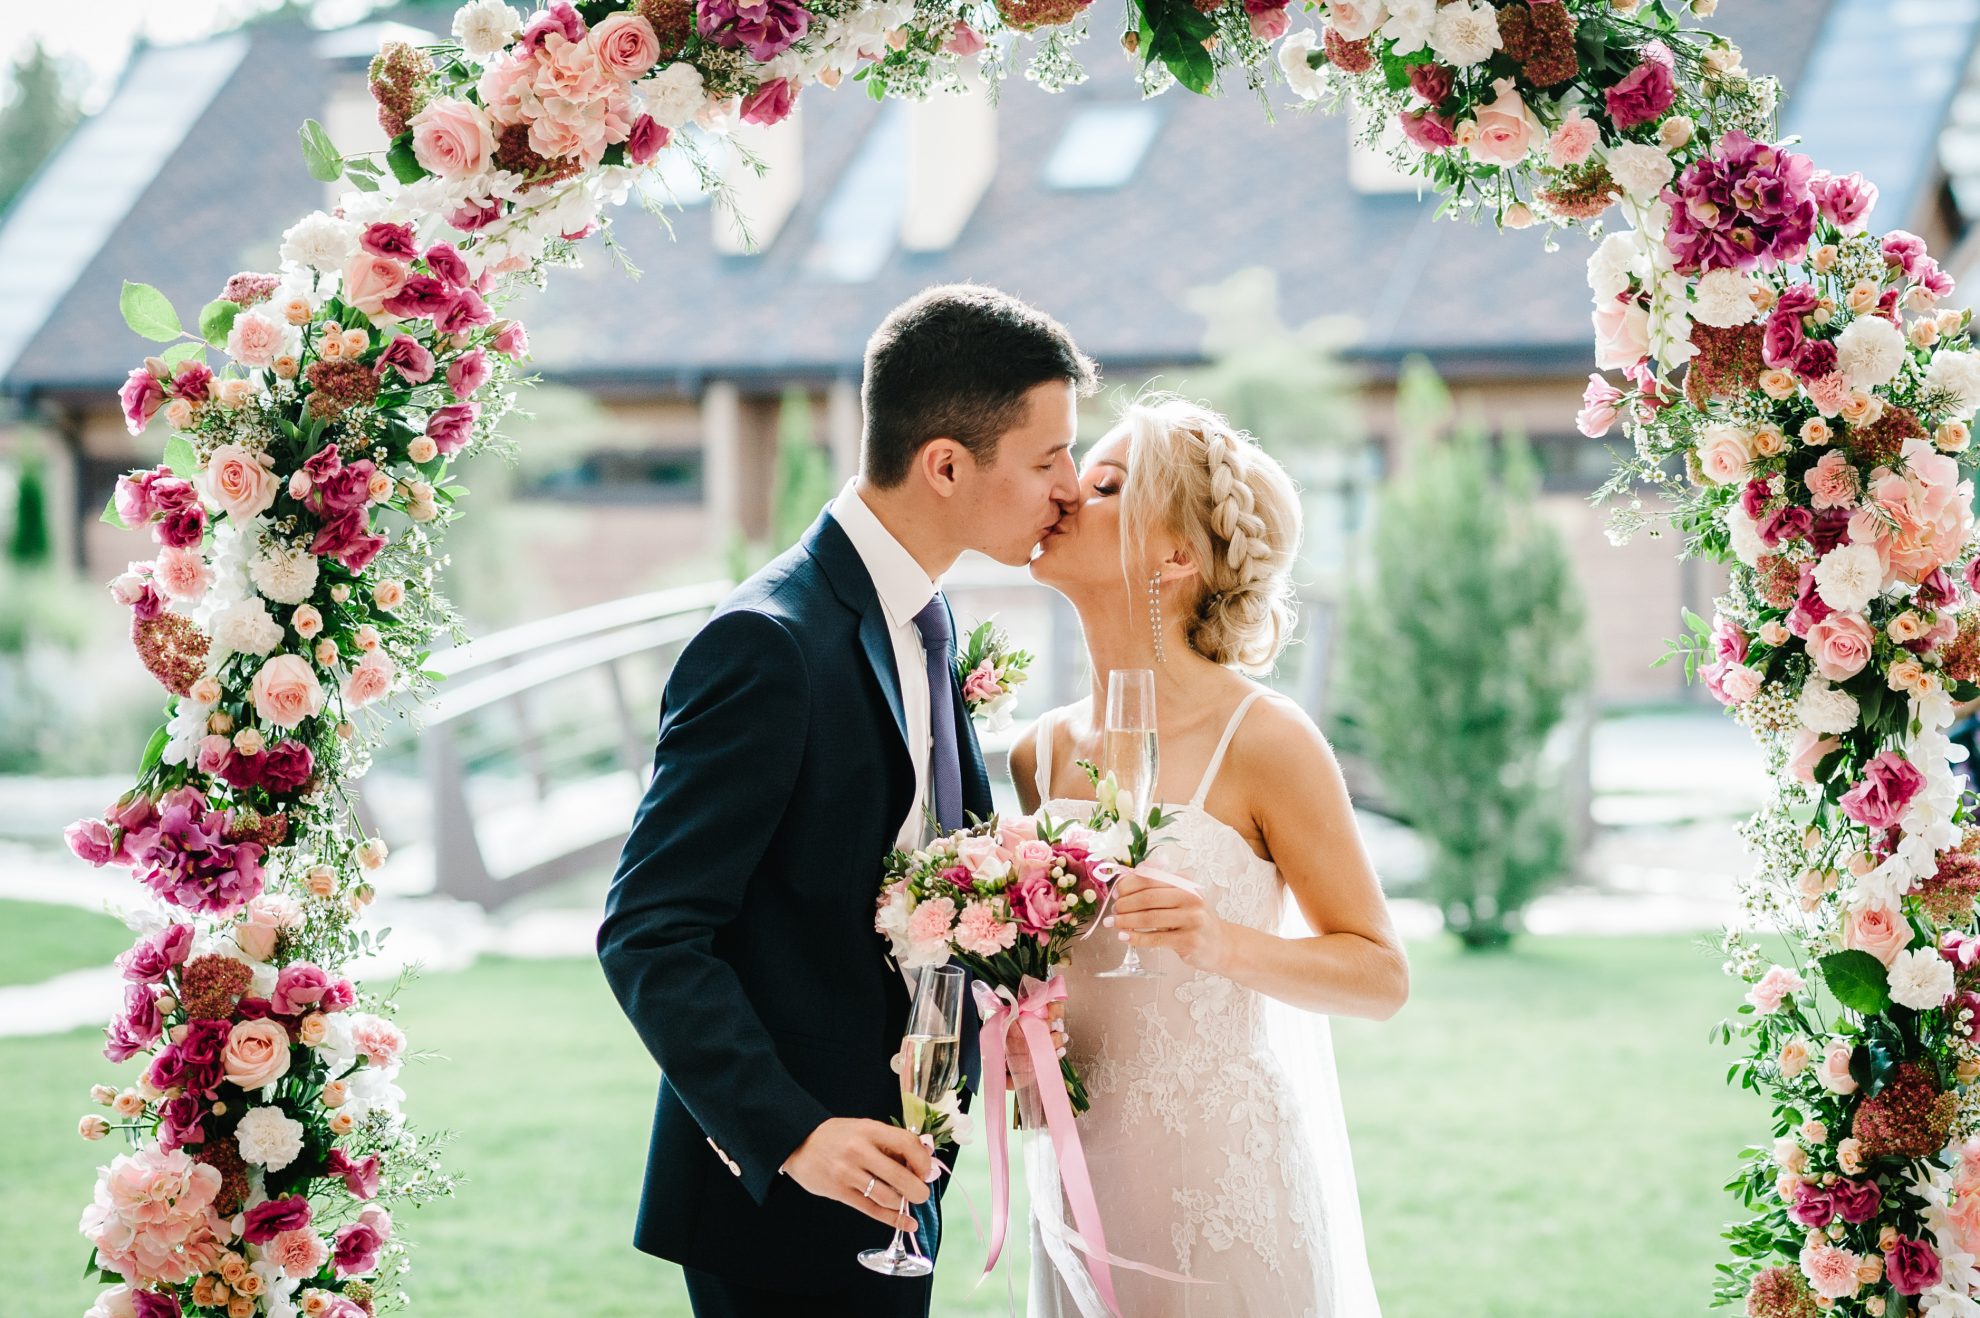 wedding floral archway